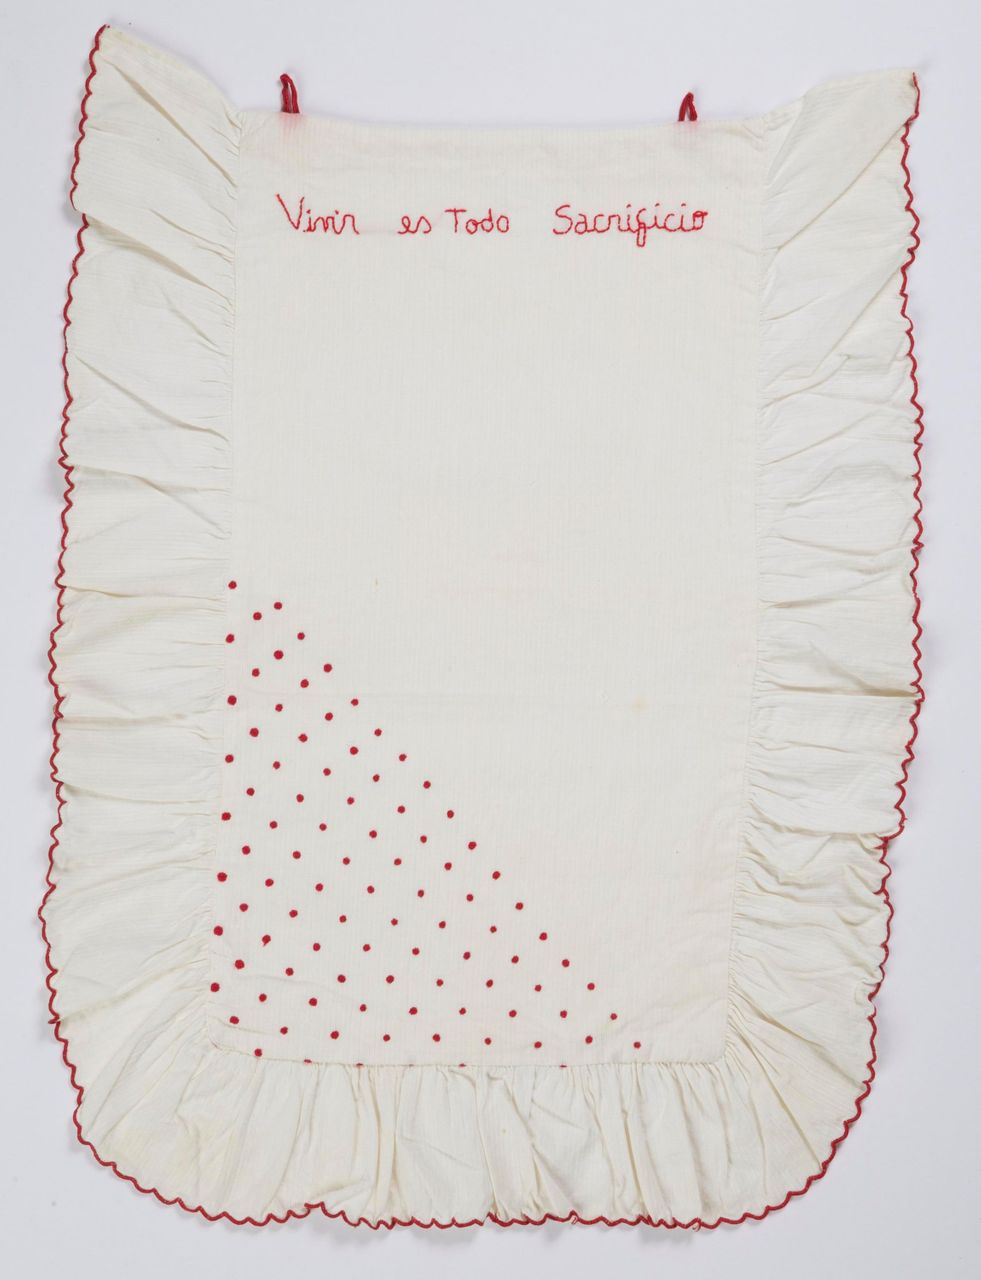 Vivir es Todo Sacrificio, 1996 | Embroidery with inclusion on blanket 43 x 55 cm